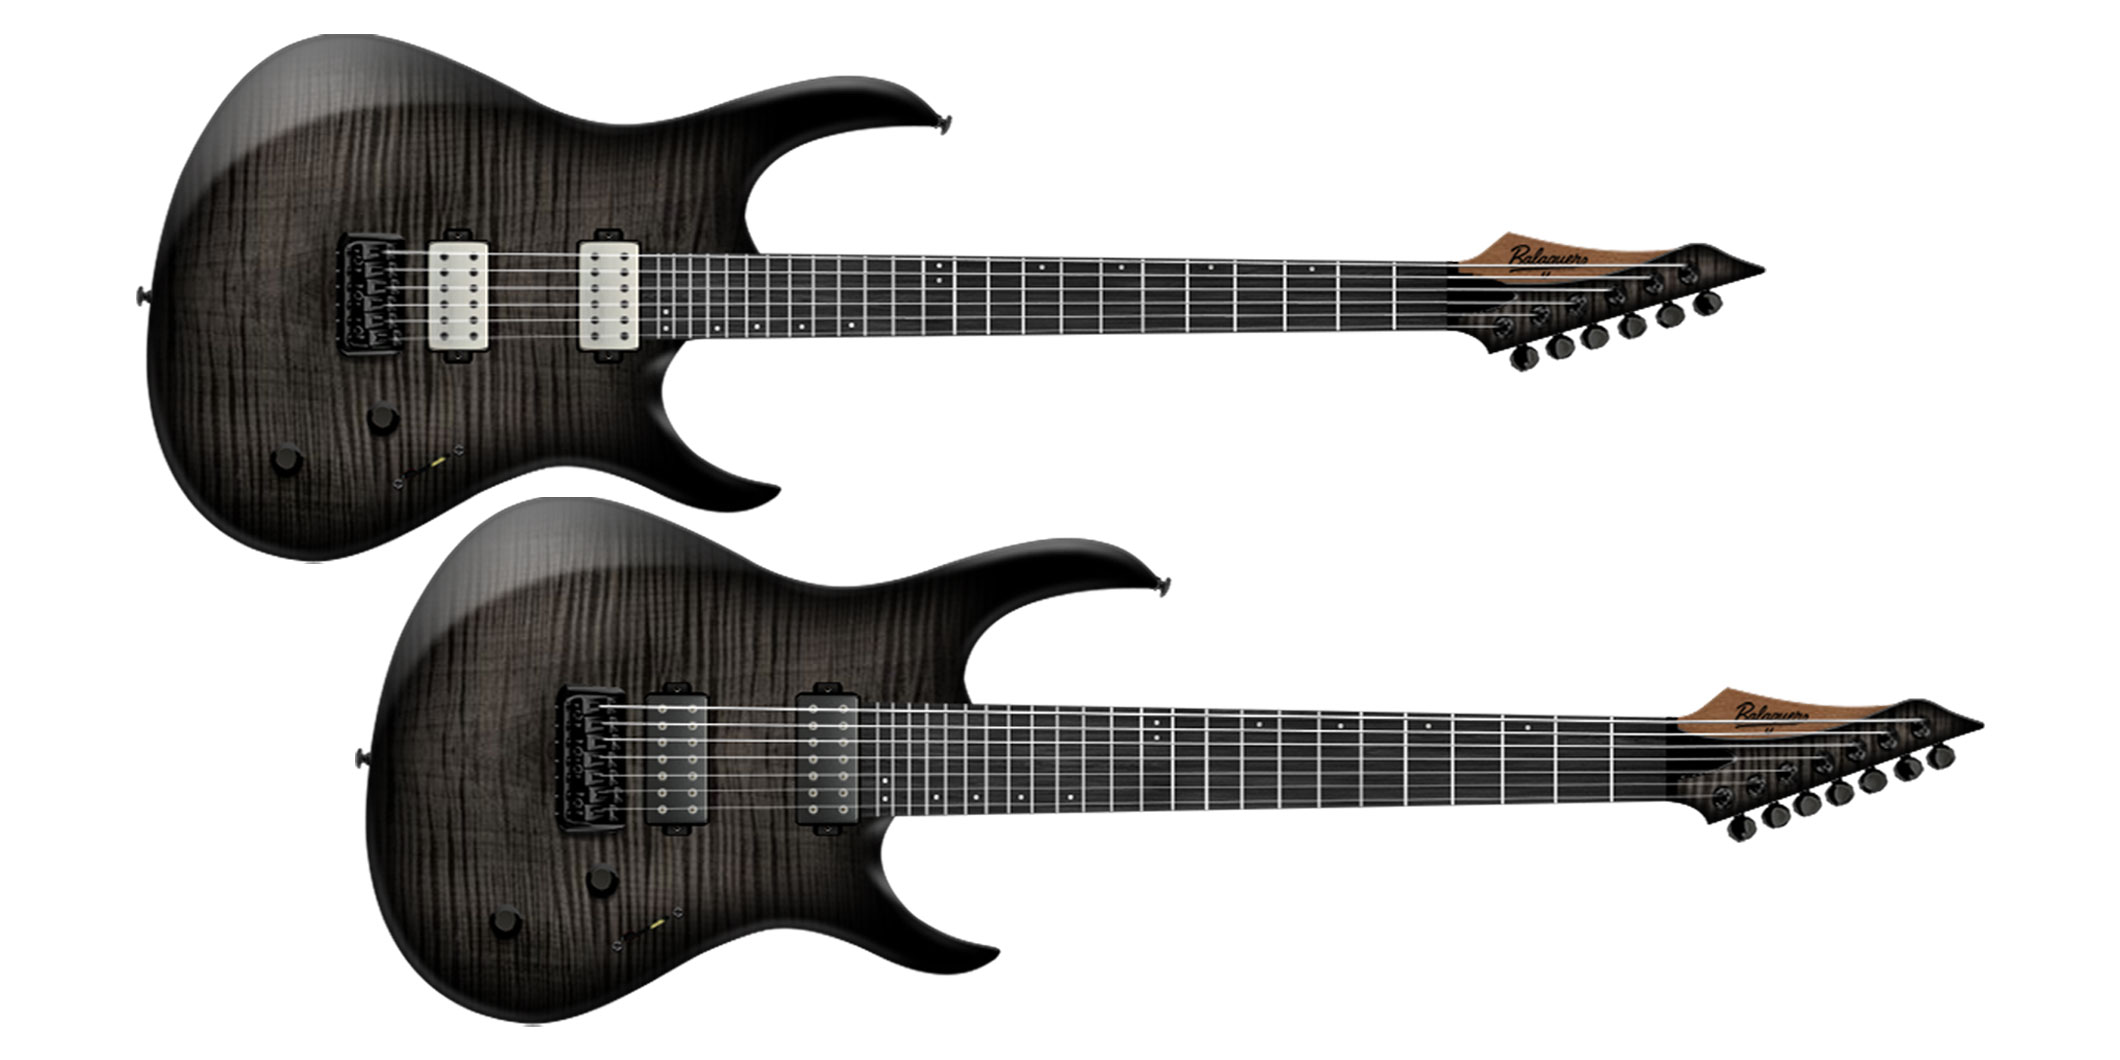 バラゲール・ギターズのDiablo Standardモデルに、新たな仕様を持つ6弦と7弦のギターが追加